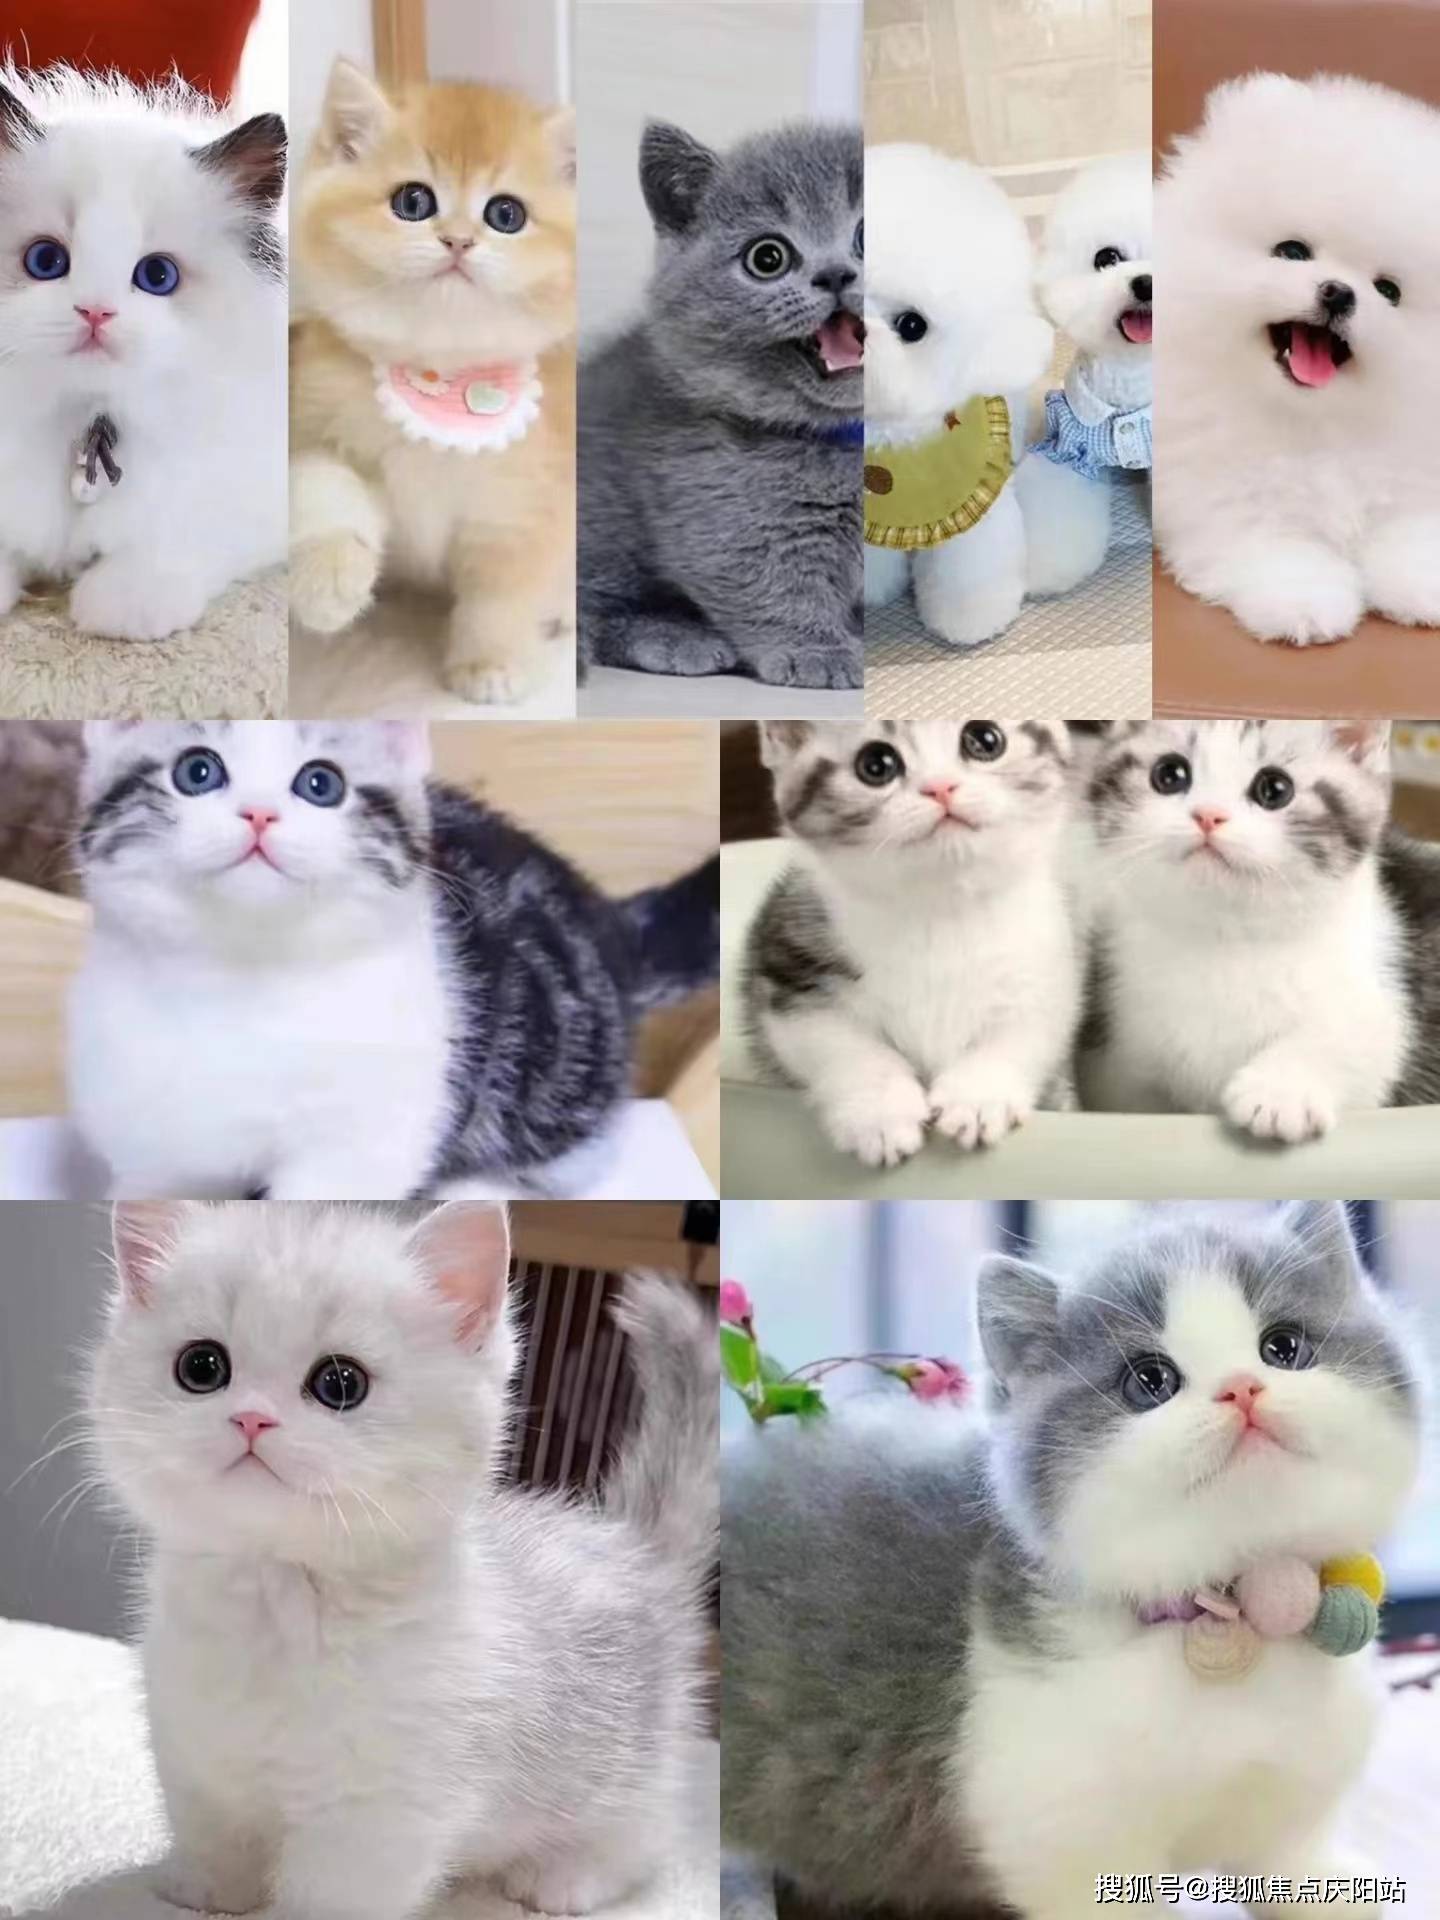 南京福安家宠物店的工作人员,都是养猫专家,他们能提供全方位的养猫